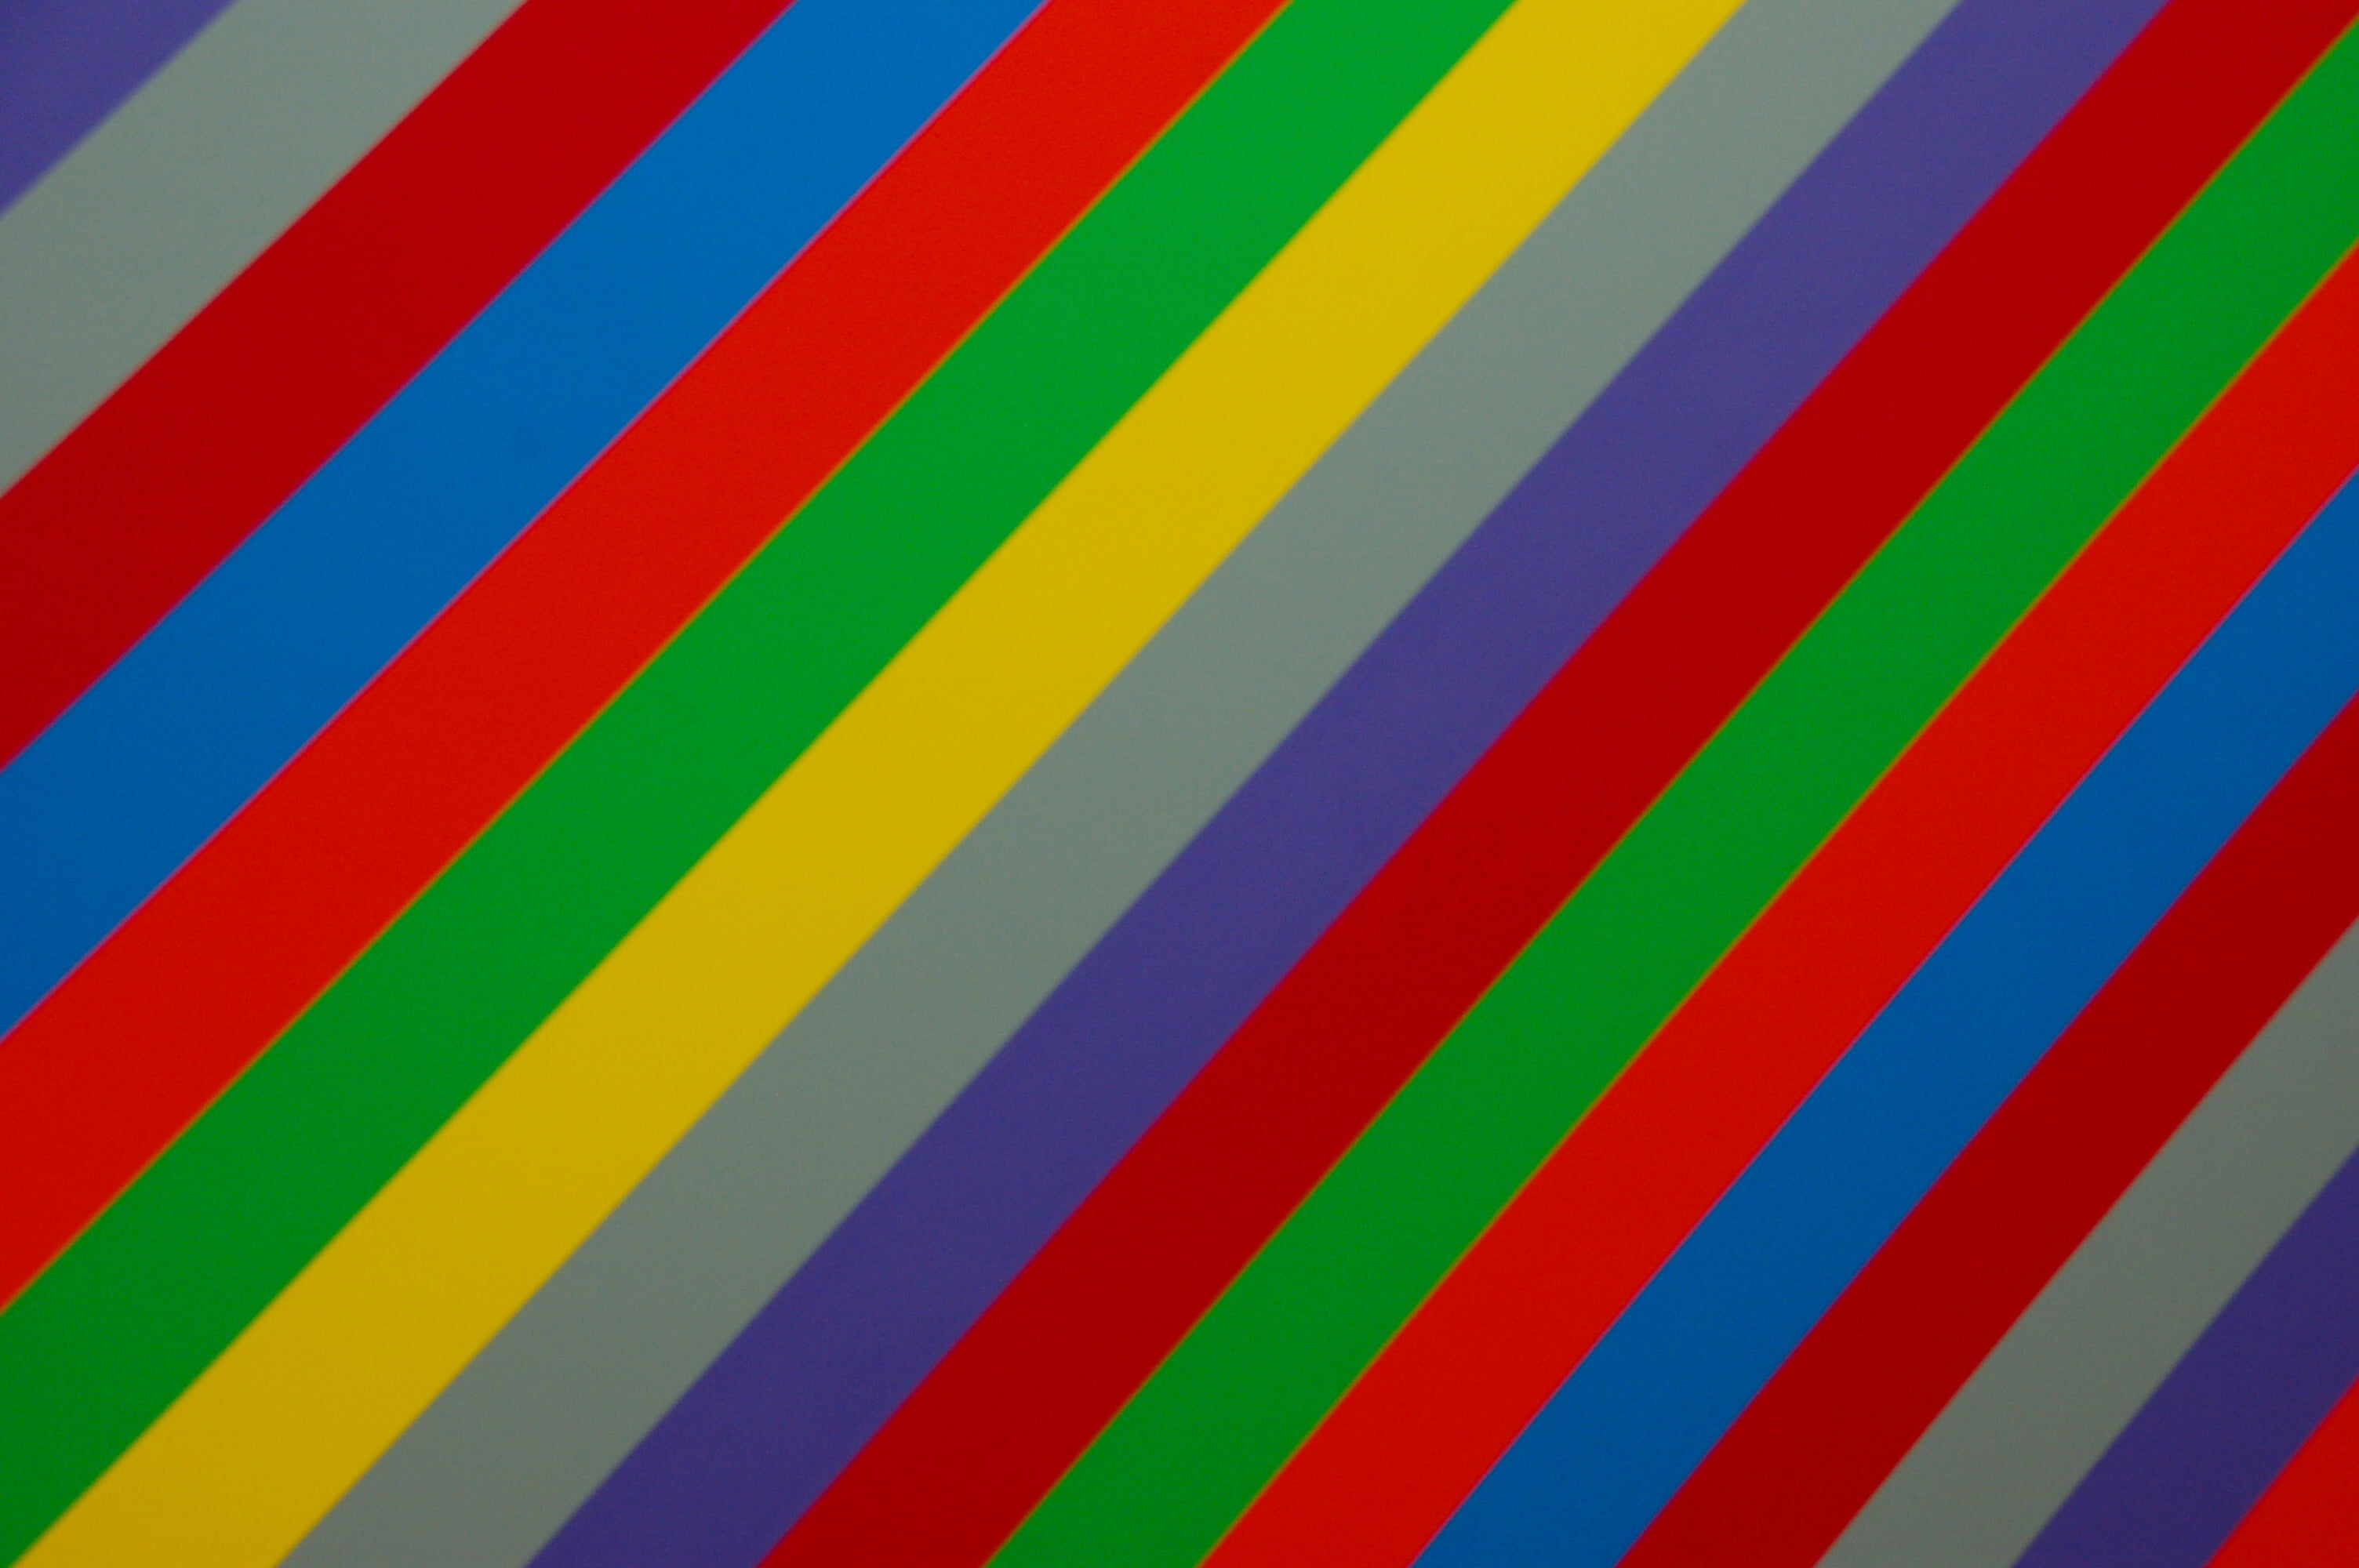 multicolored striped pattern